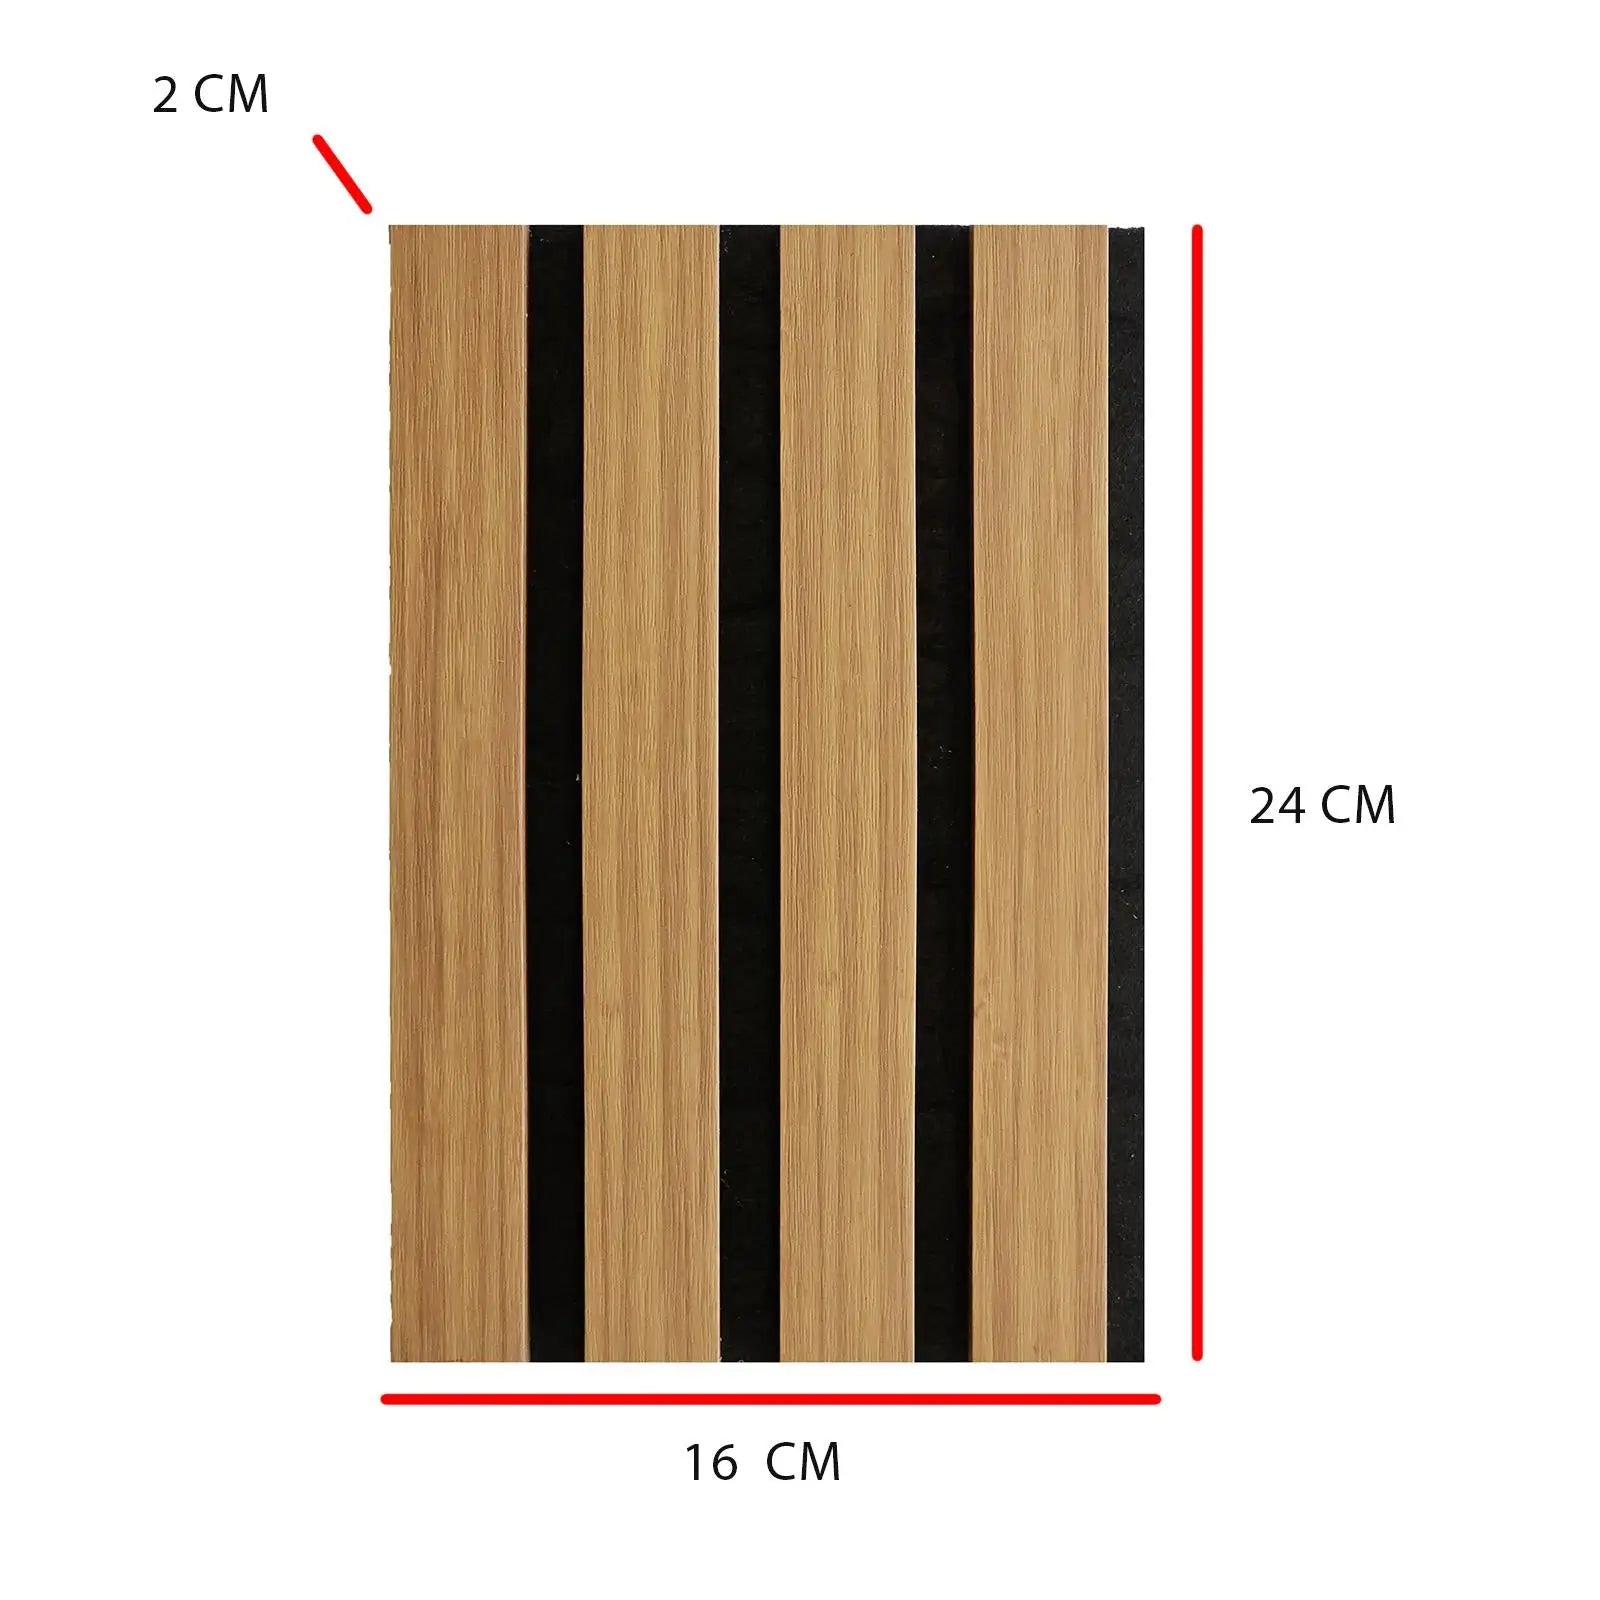 Acoustic Slat Wood Wall Panel - Oak - SAMPLE